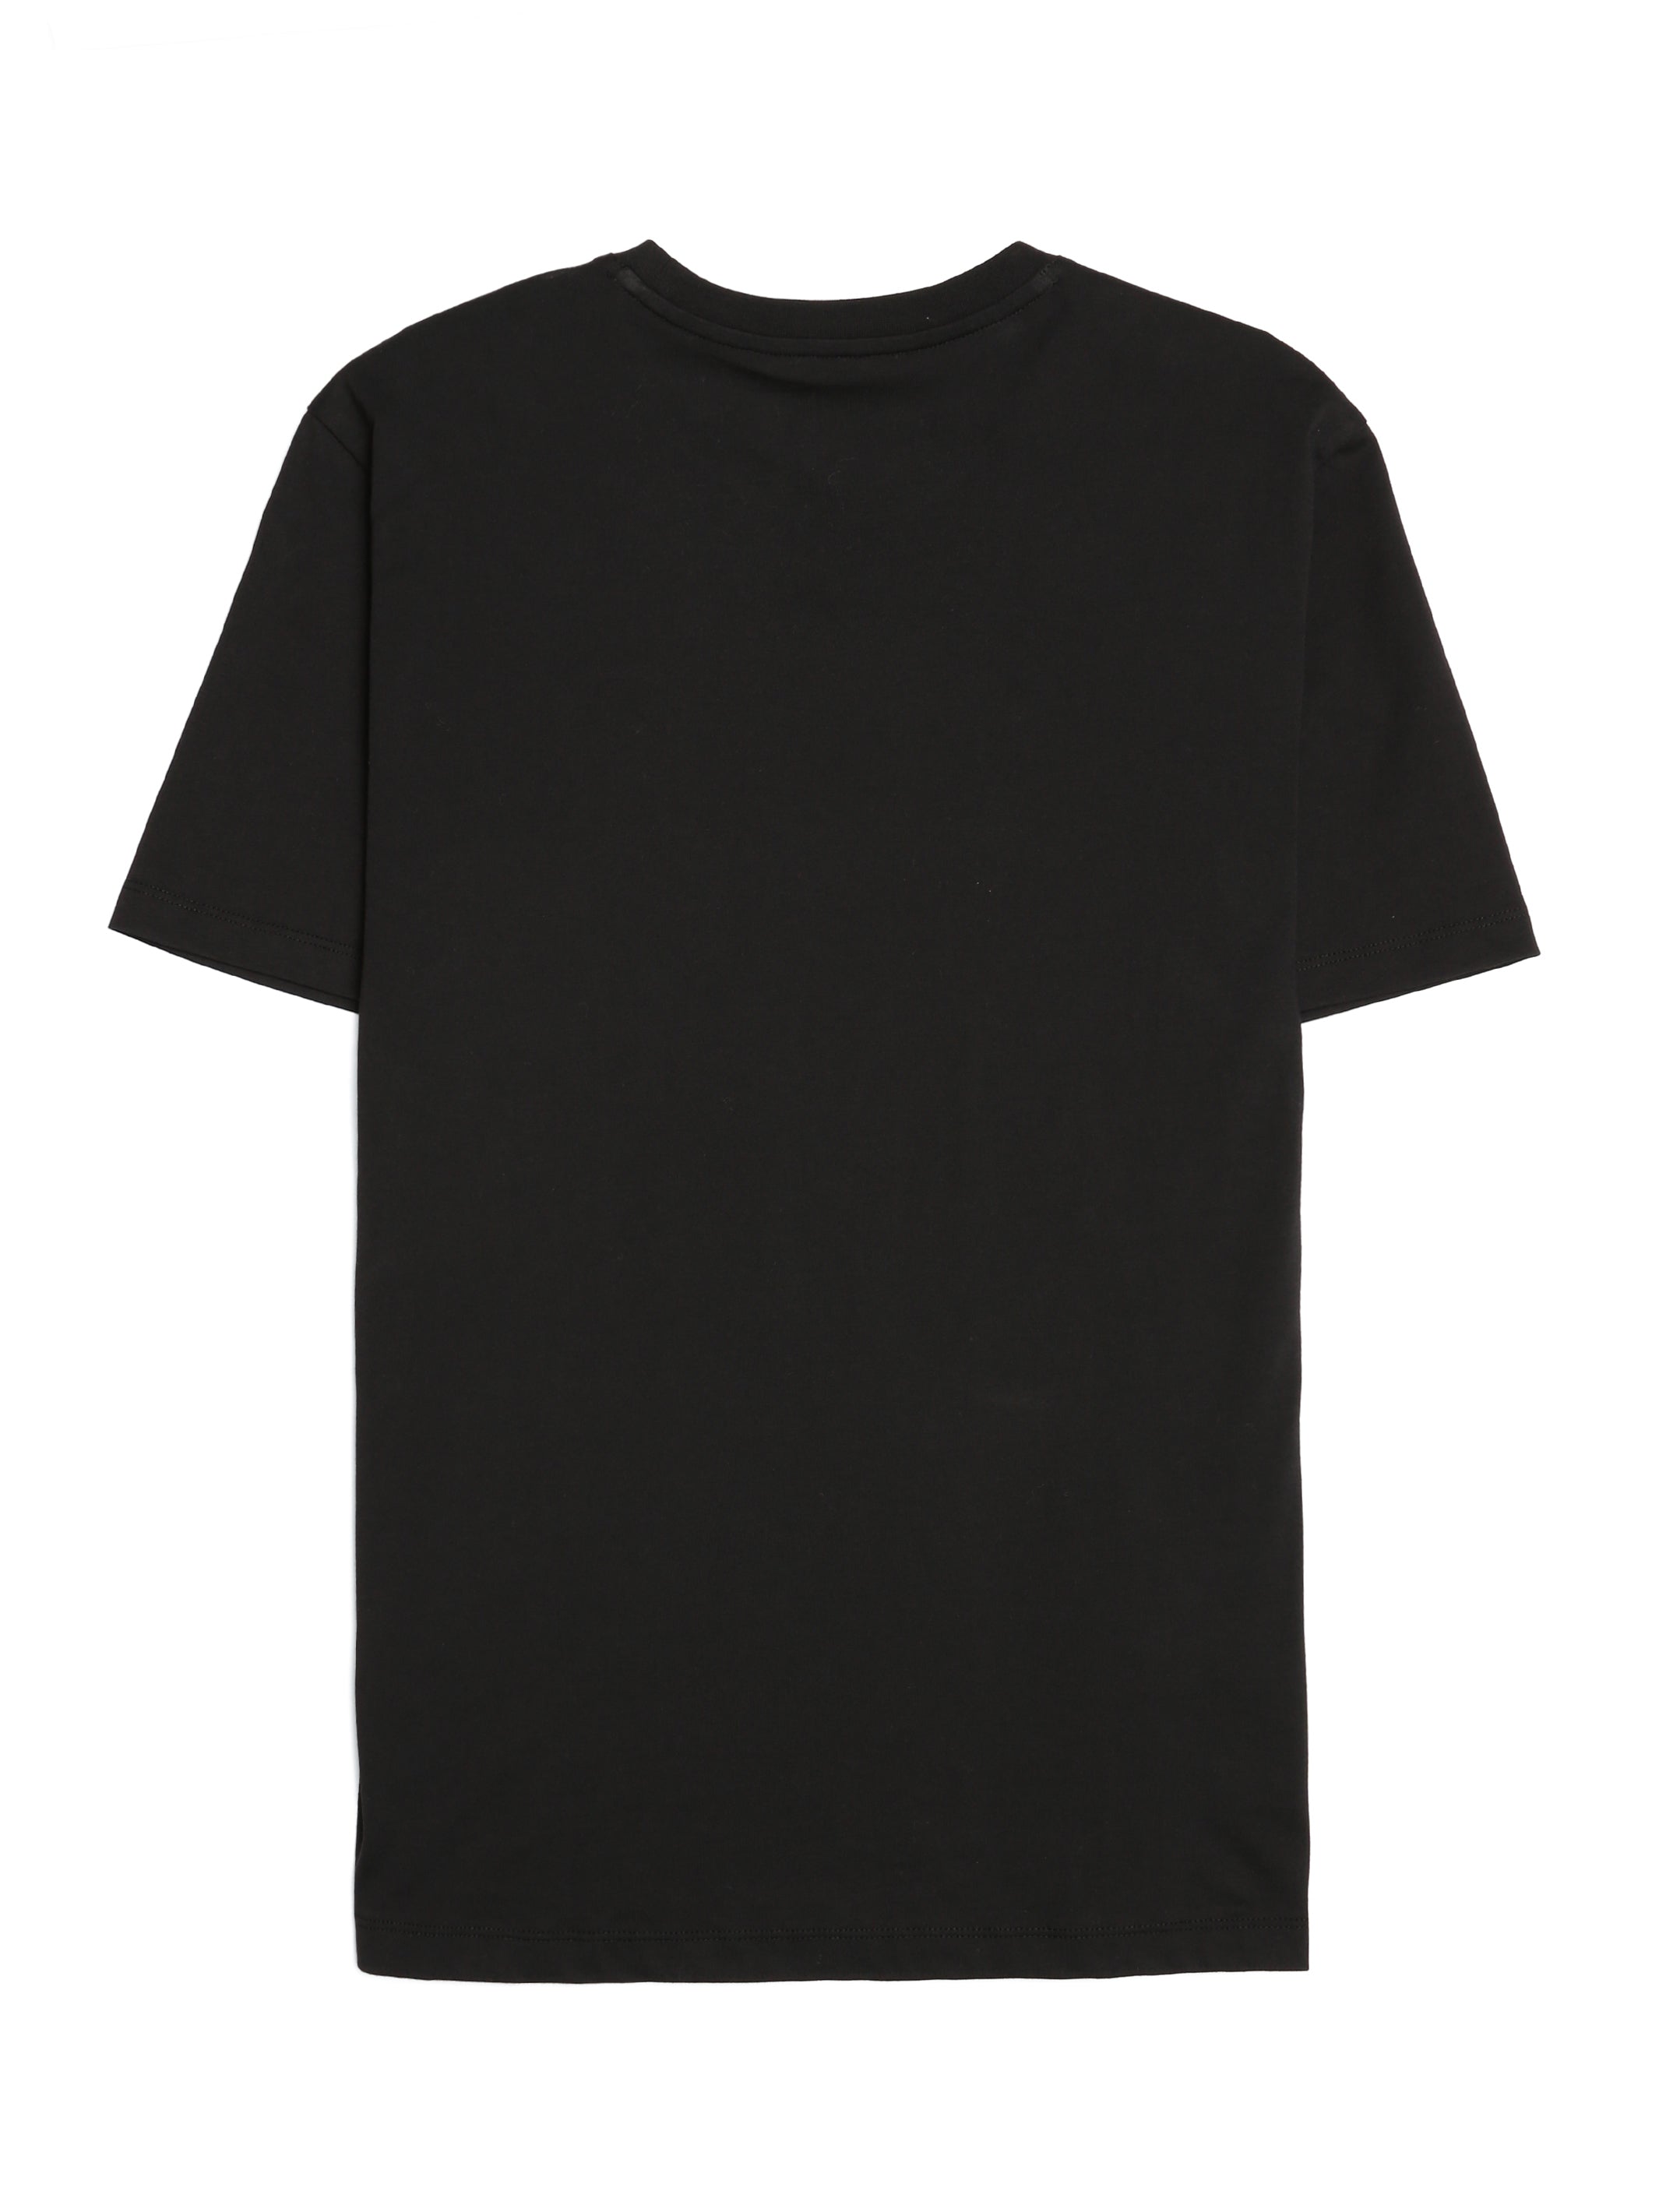 Men's Brooklyn Bridge T-shirt in Jet Black